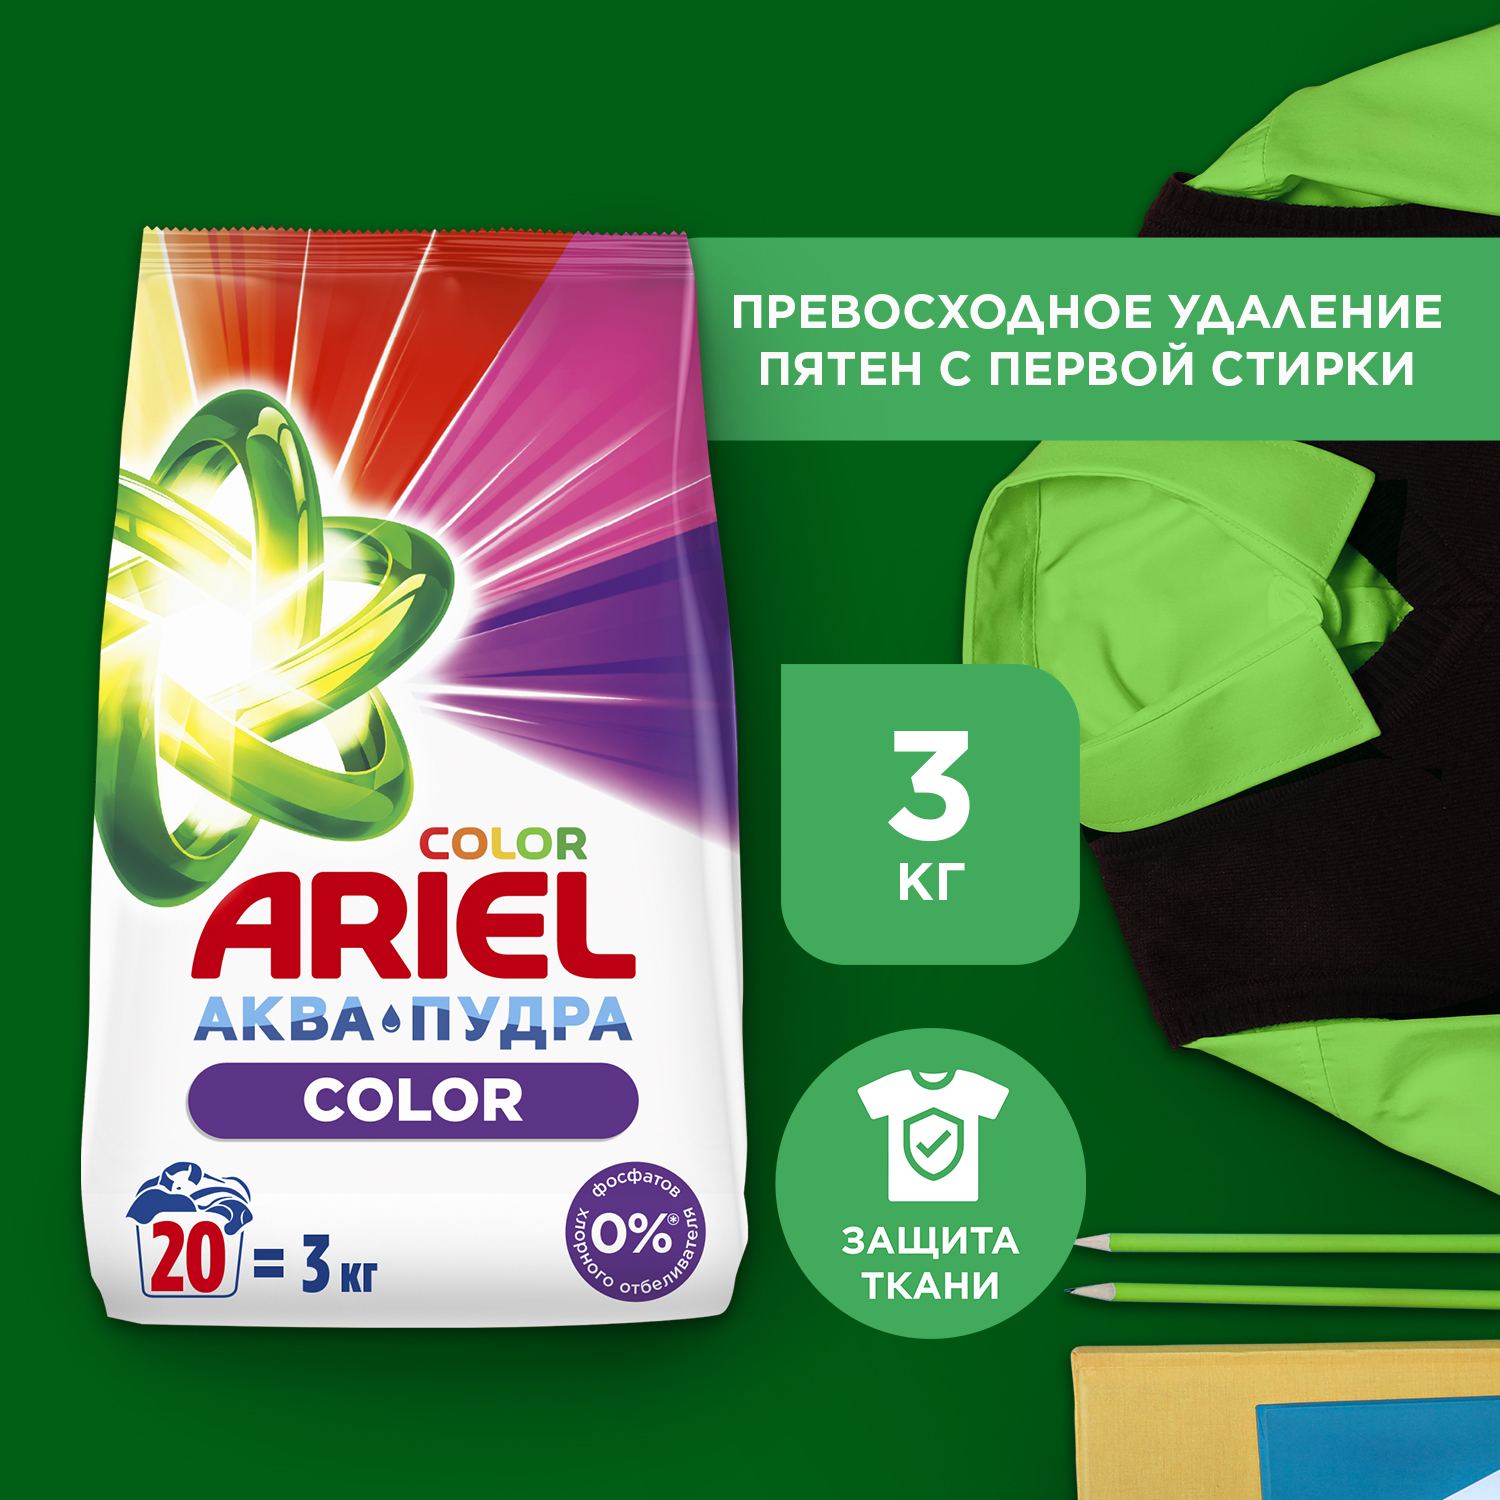 Порошок стиральный Ariel Color автомат 3 кг - отзывы покупателей наМегамаркет